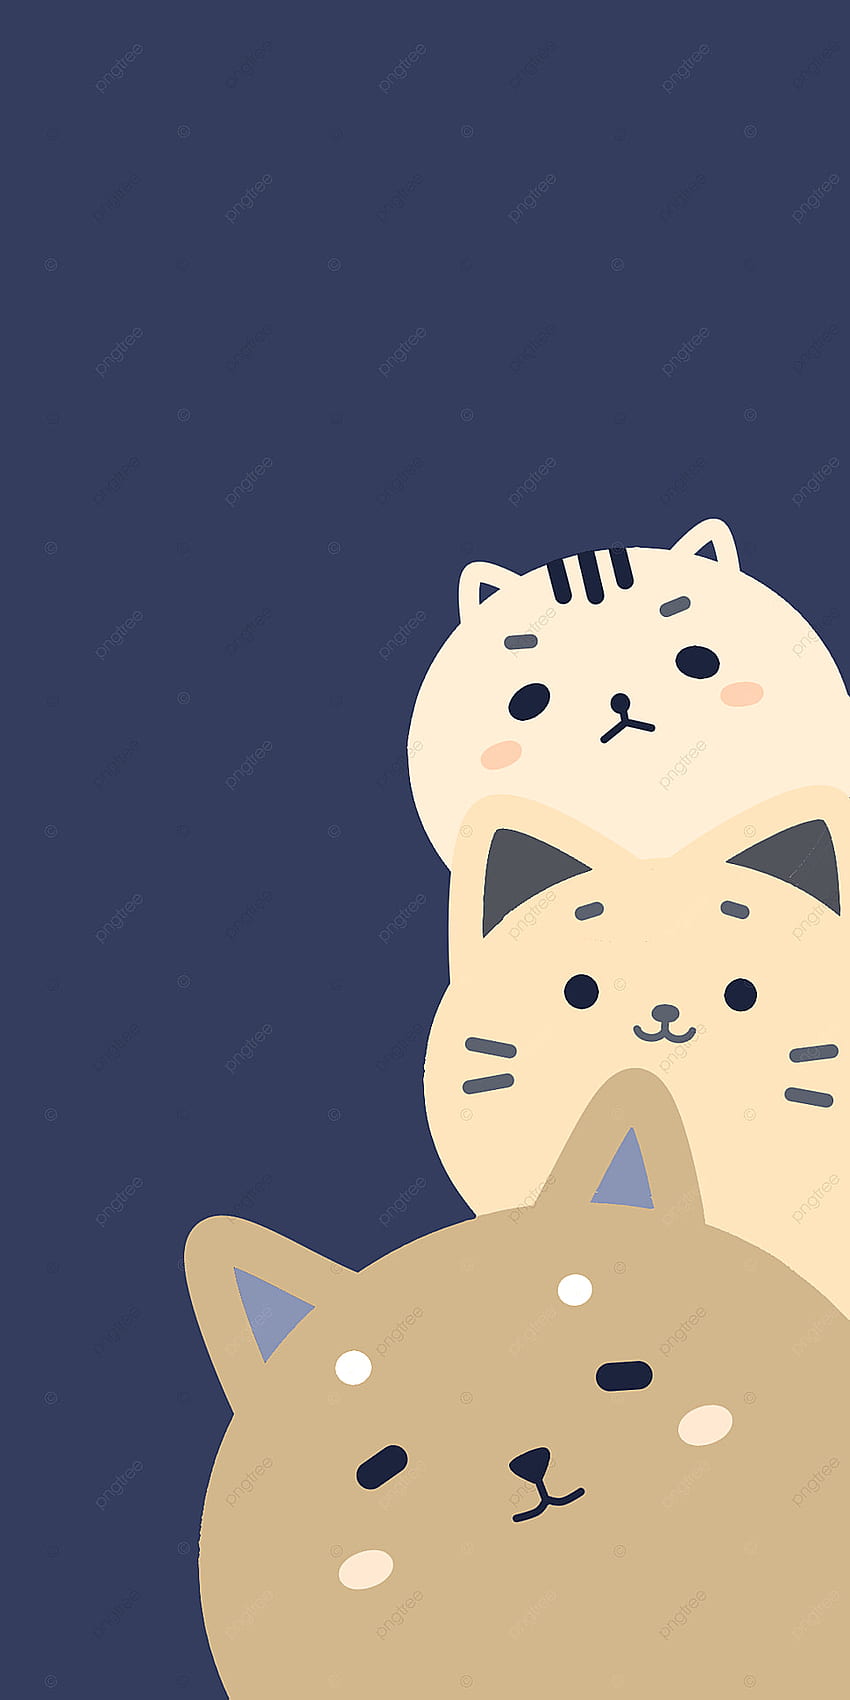 Hình nền mèo dễ thương cung cấp cho bạn một lựa chọn hoàn hảo cho chiếc điện thoại của bạn. Những hình nền với những chú mèo ngộ nghĩnh, đáng yêu sẽ giúp bạn cảm thấy vui vẻ và thoải mái.